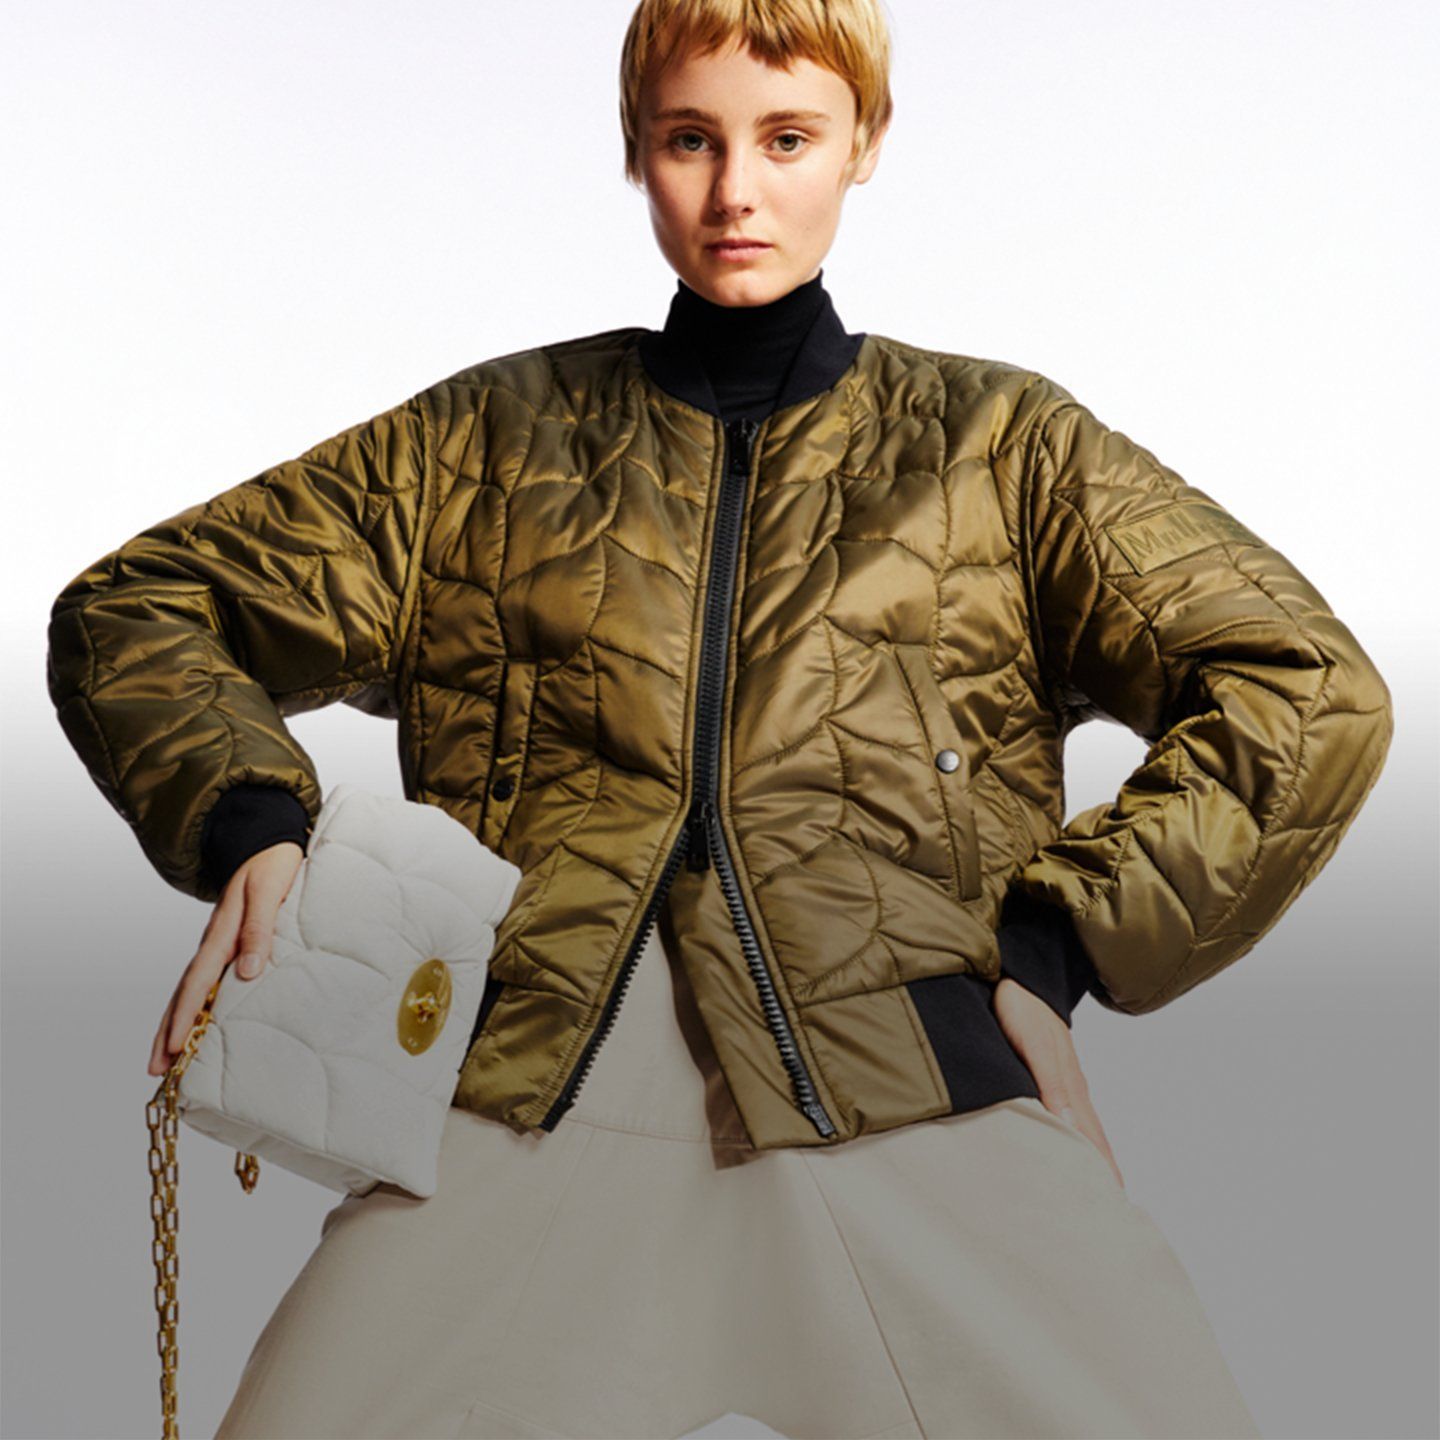 マルベリー ソフティ ボンバー ジャケットとホワイトのソフティ バッグを着用したモデル